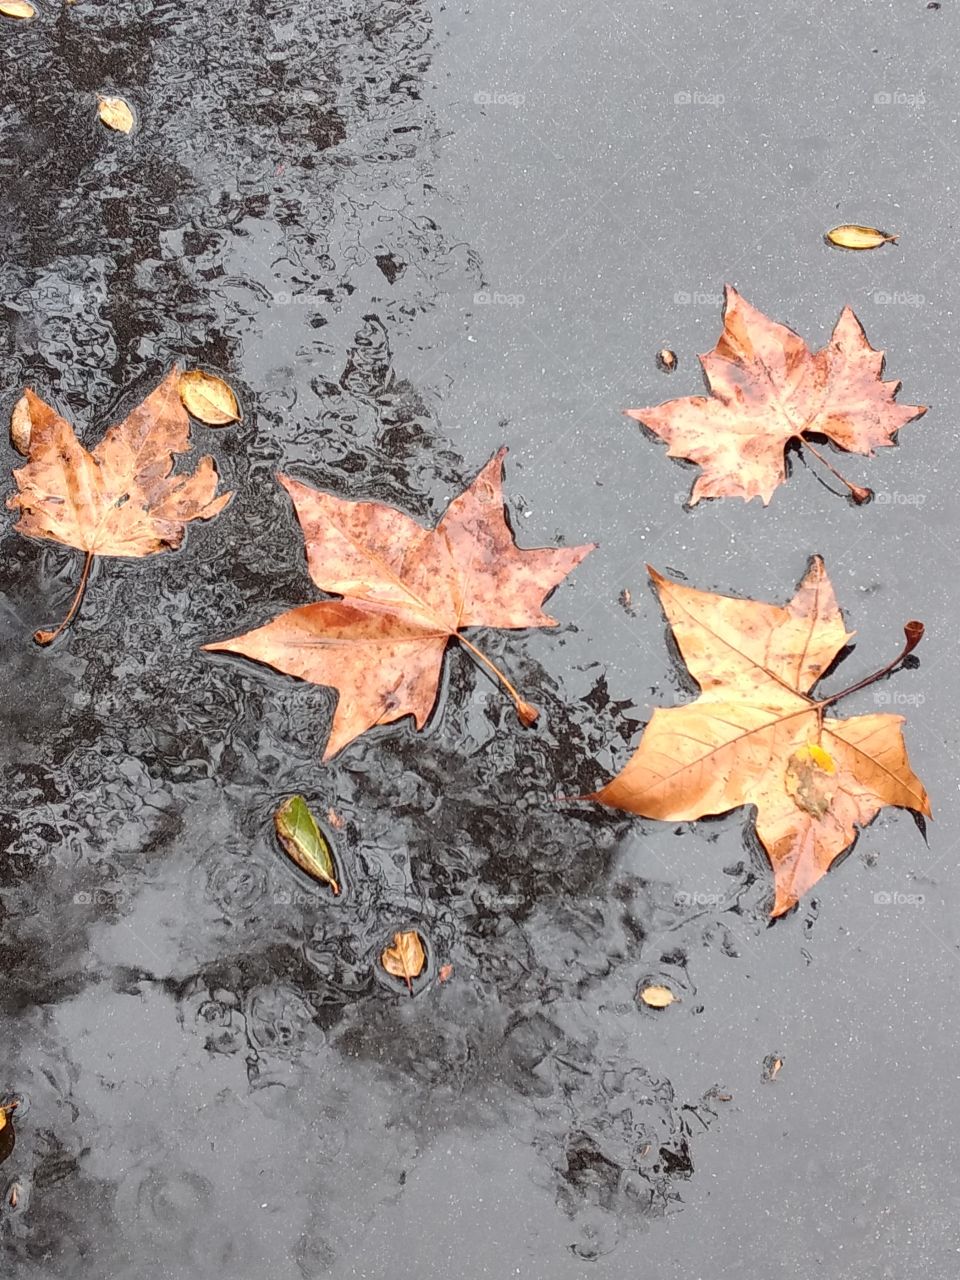 Leaf in the rain.